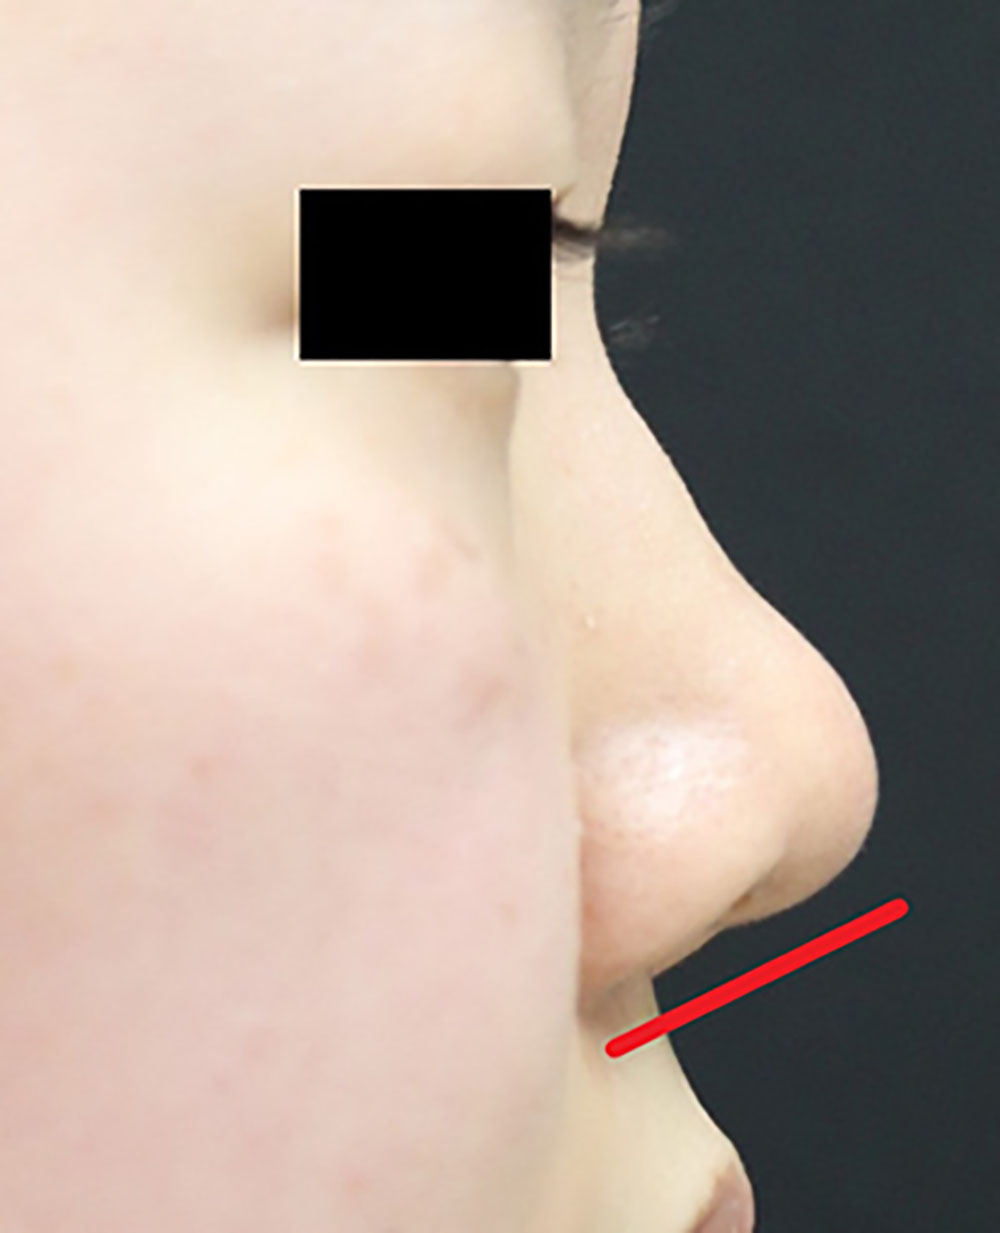 鼻整形の症例